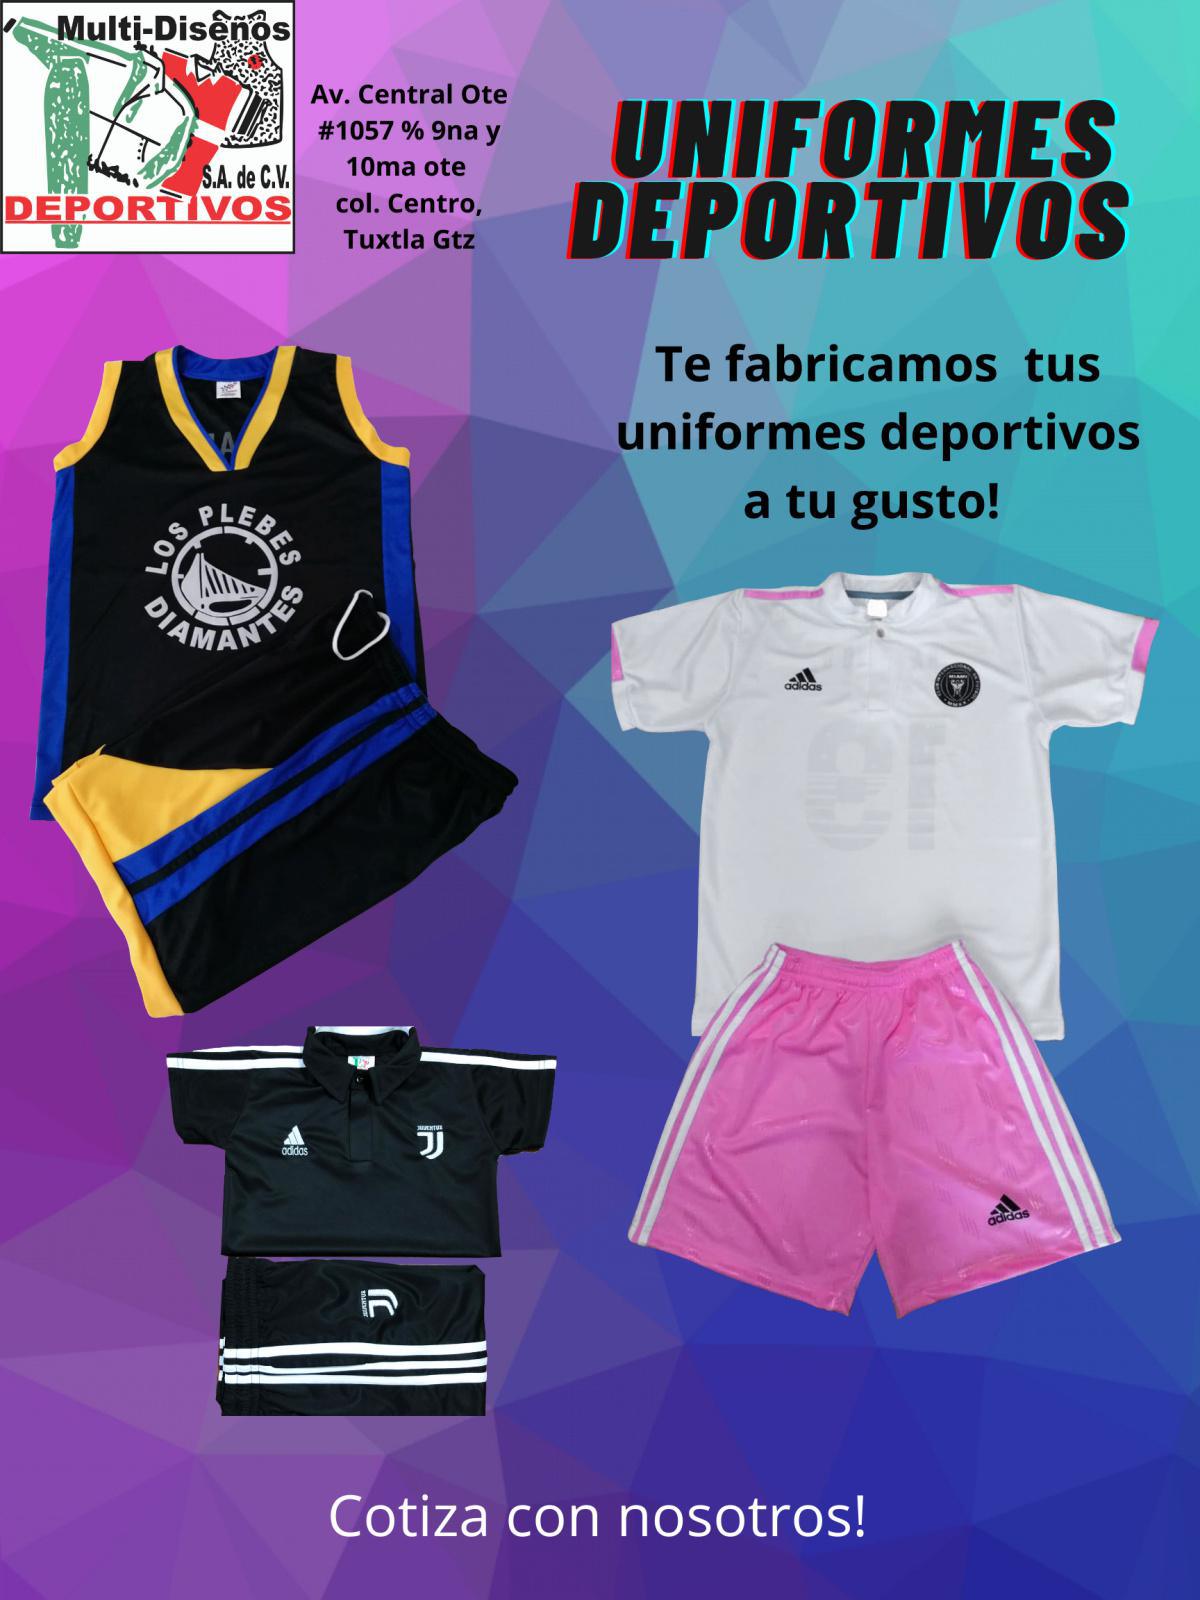 Multidiseños Deportivos SA de CV - Tuxtla Gutiérrez